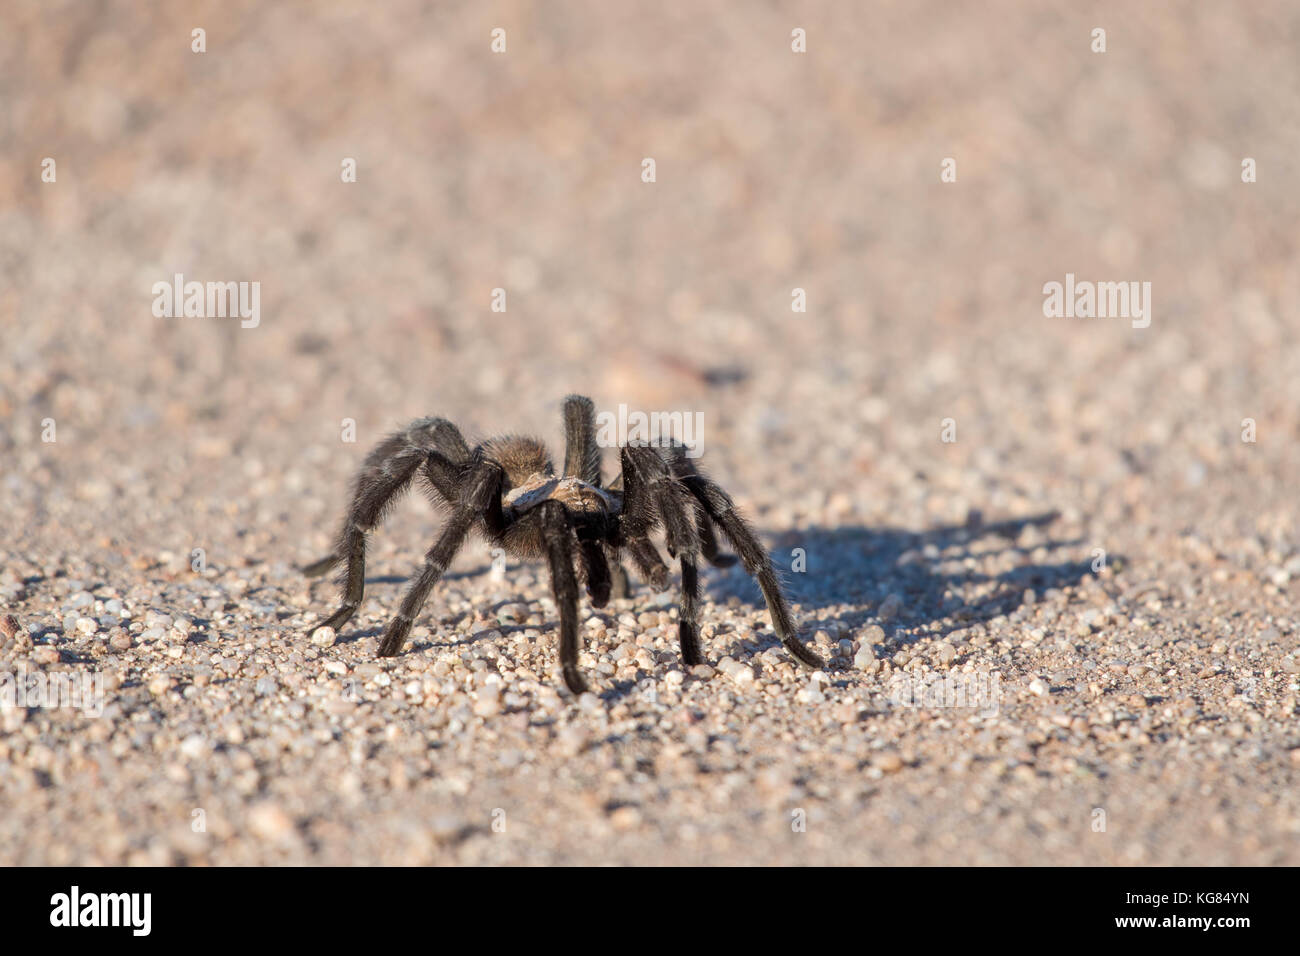 Tarantula, Socorro co., New Mexico, USA. Stock Photo